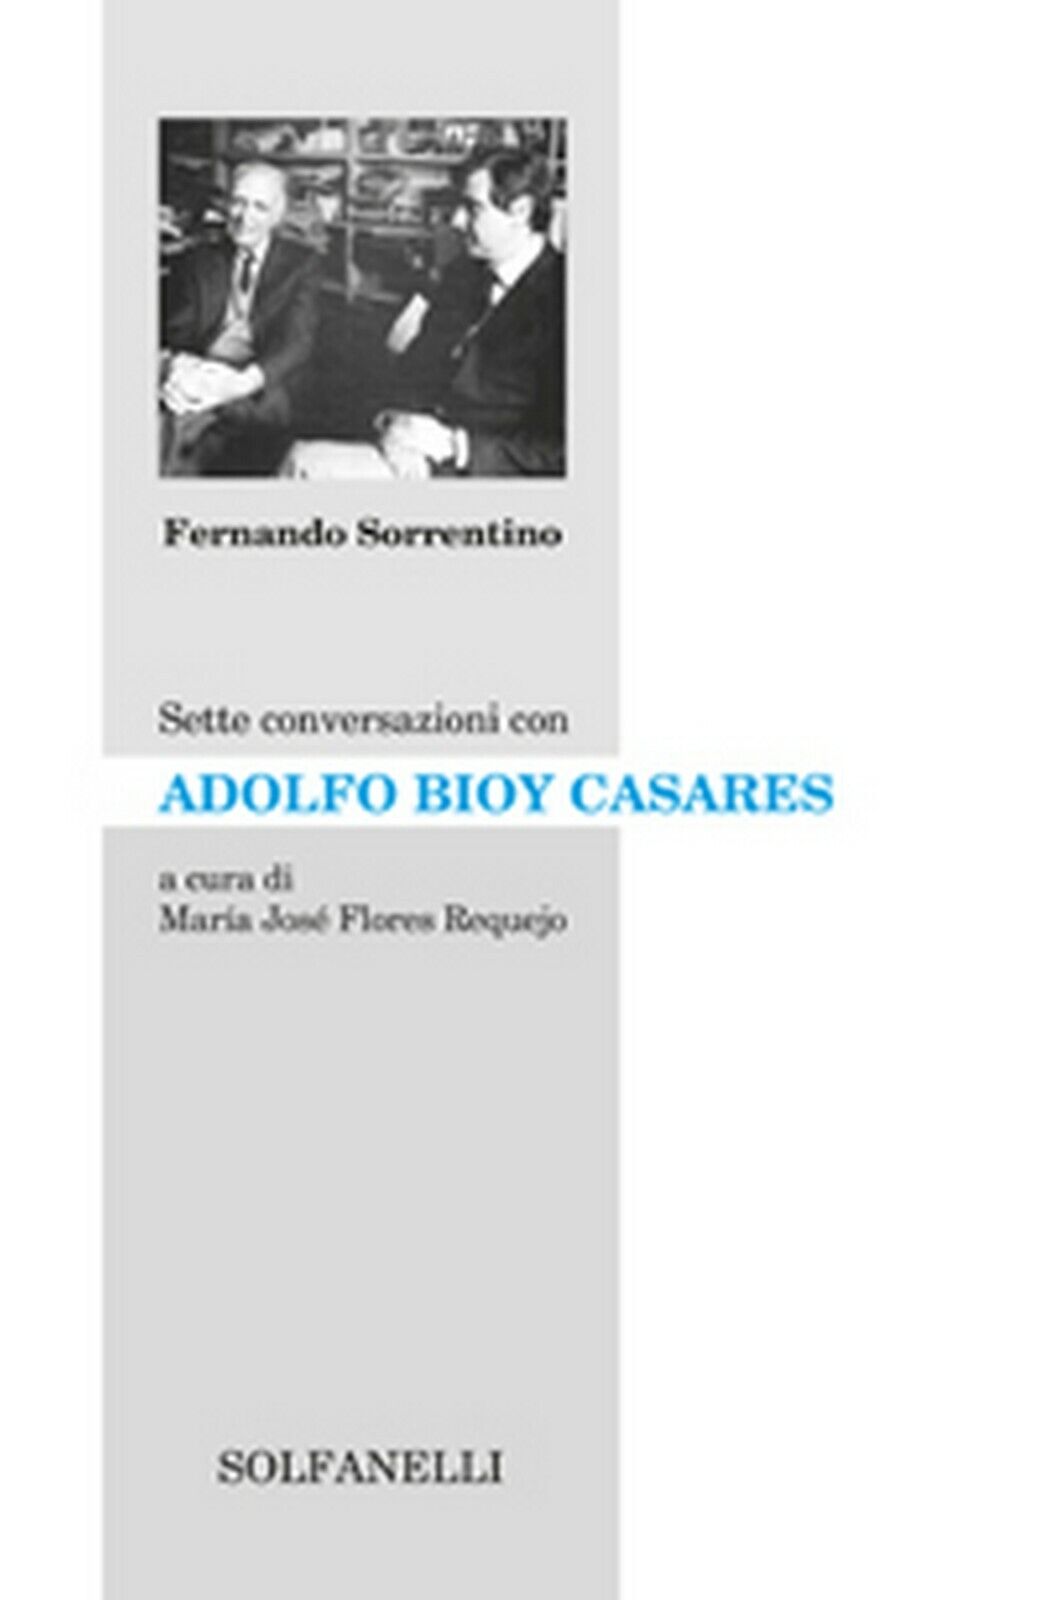 SETTE CONVERSAZIONI CON ADOLFO BIOY CASARES  di Fernando Sorrentino,  Solfanelli